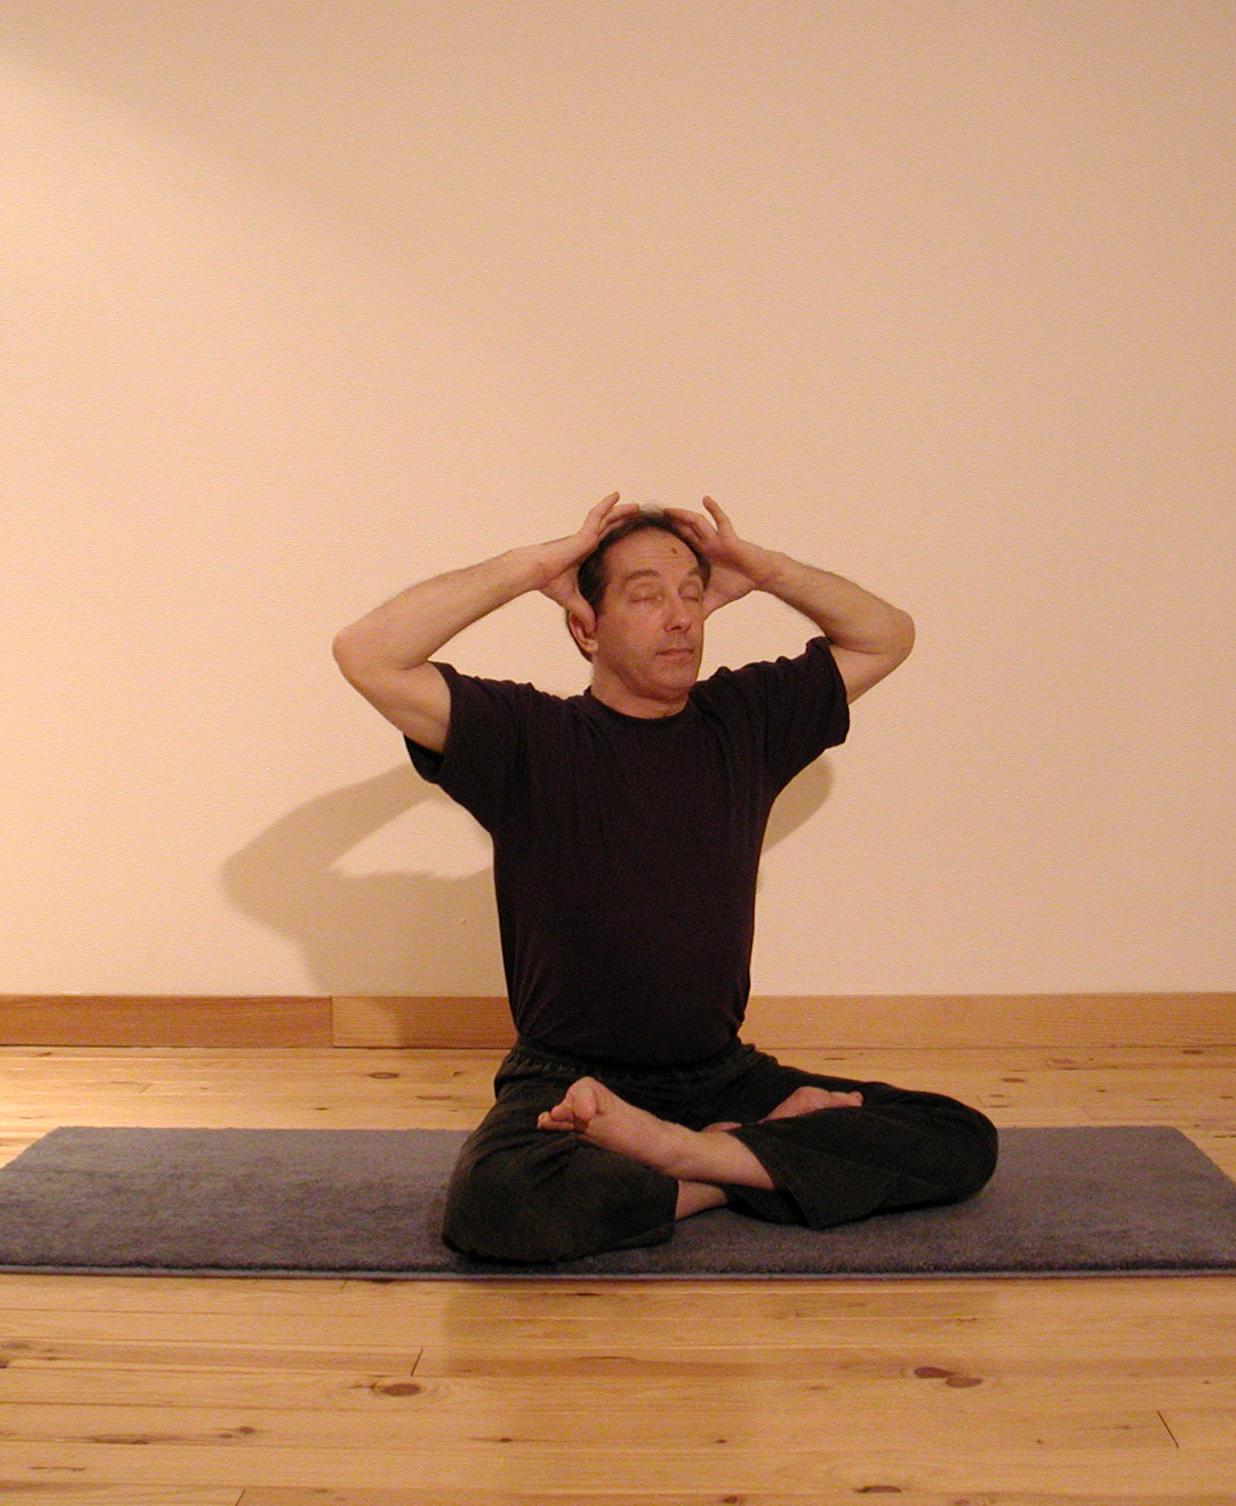 Yoga respiration: bhramari, la respiration de l'abeille. Des centaines de photos, de videos, d'articles sur le site www.natha-yoga.com - 2011